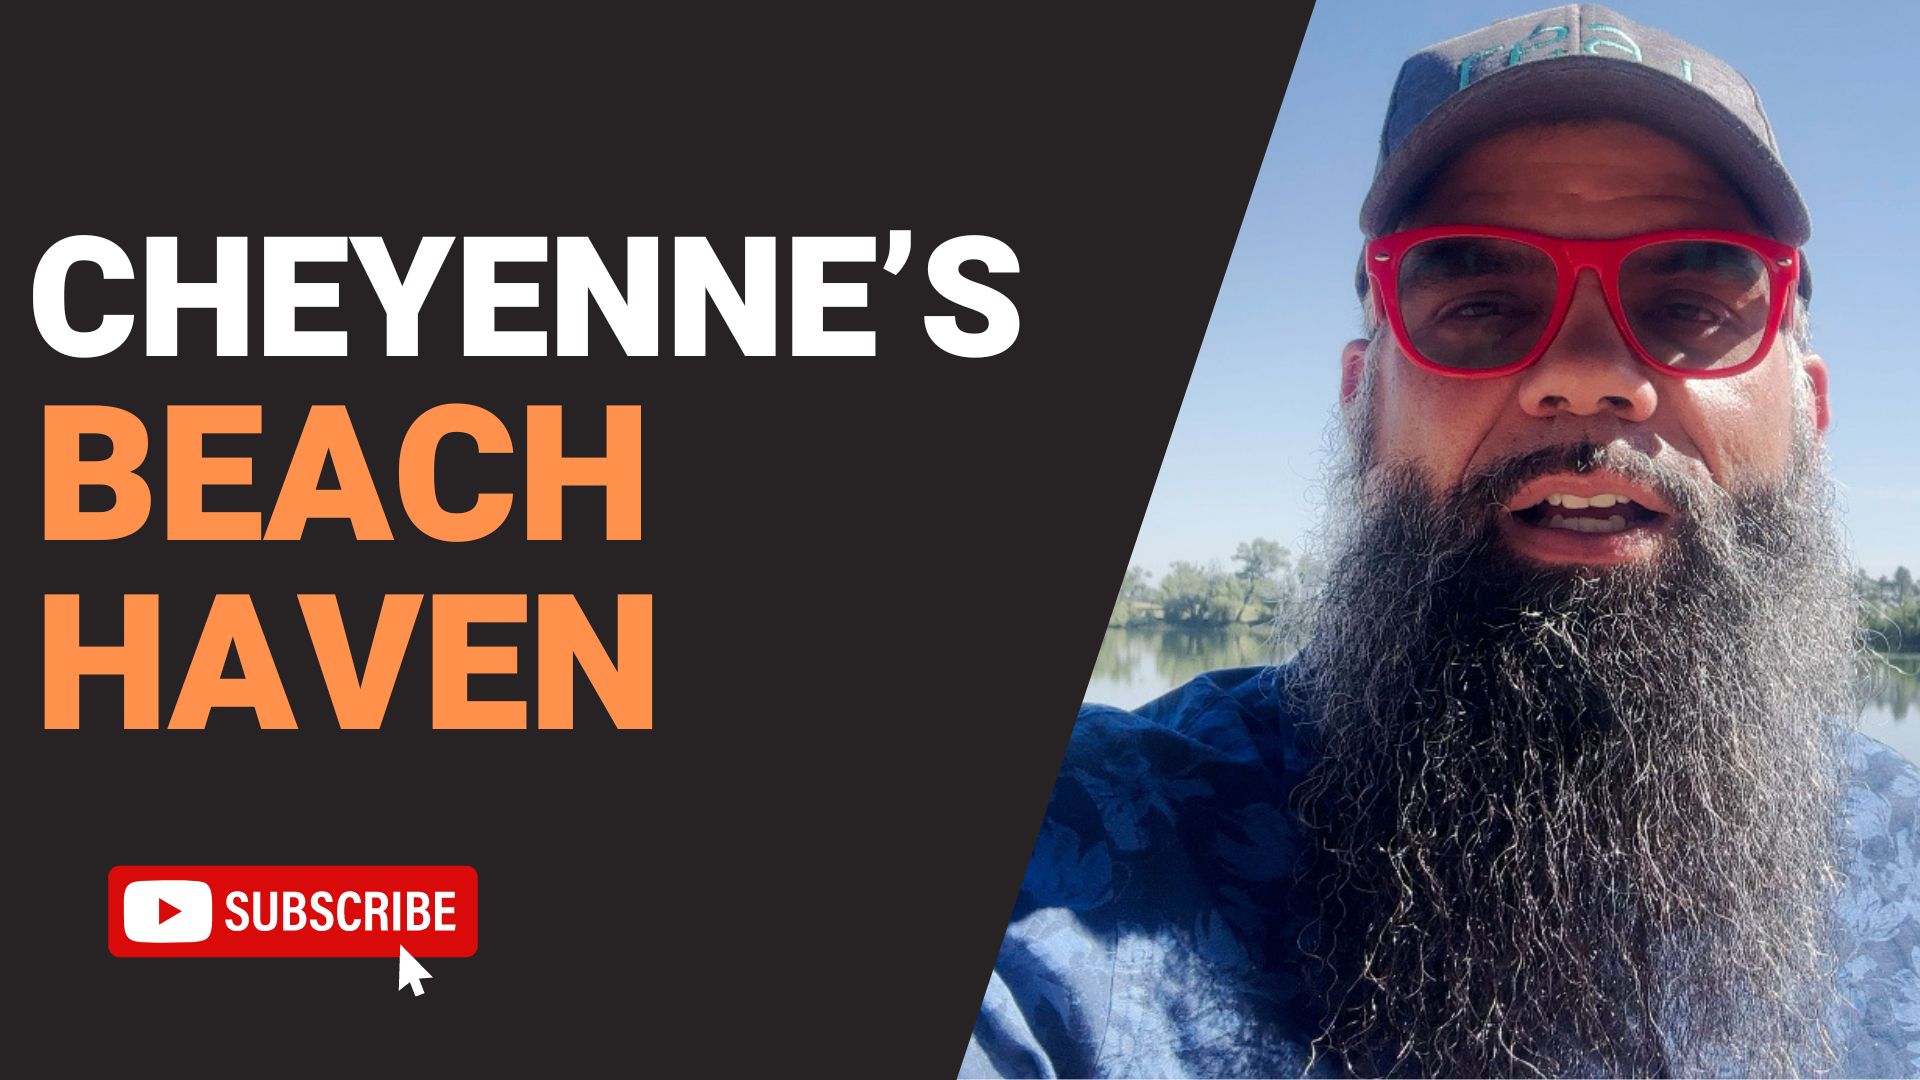 Cheyenne’s Beach Haven